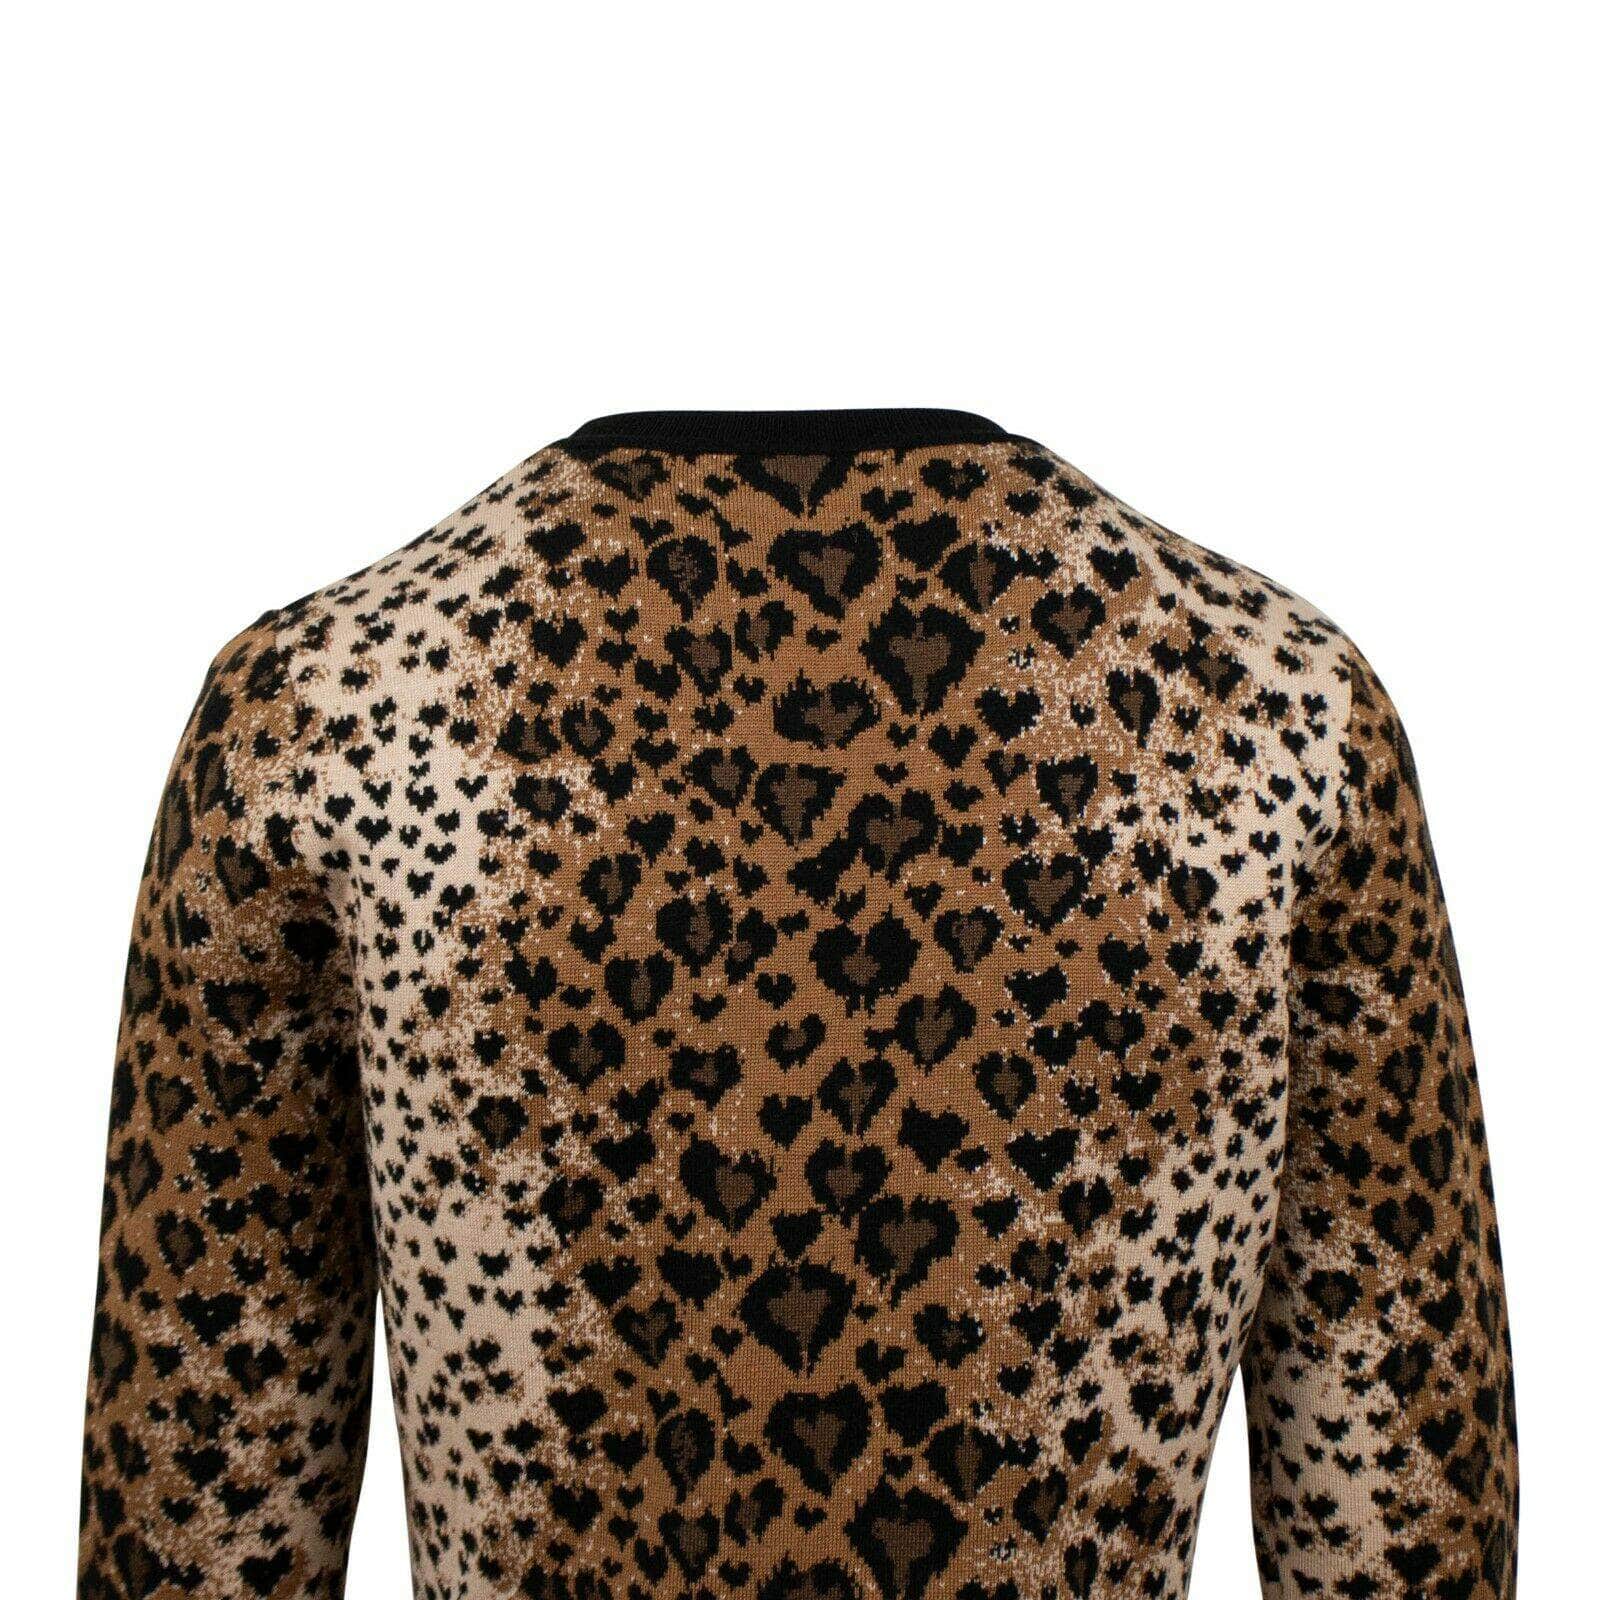 RED VALENTINO 250-500, size-l L Leopard Print Long Sleeve Mini Sweater Dress 67V-552/L 67V-552/L